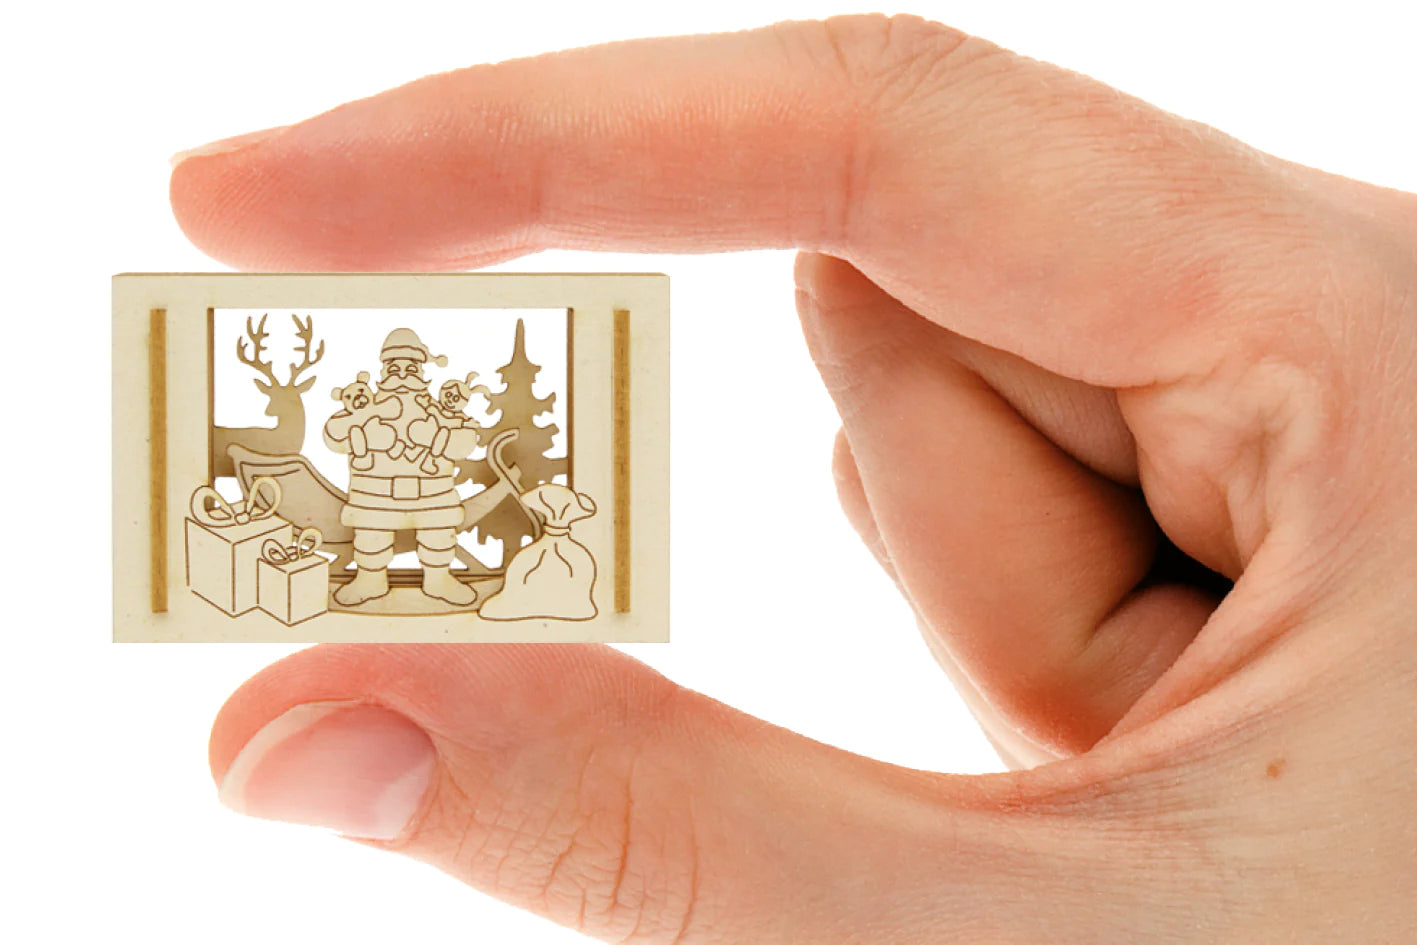 Weihnachten in Streichholzschachtel – kleine 3D-Weihnachtsszene als Mini-Silhouette